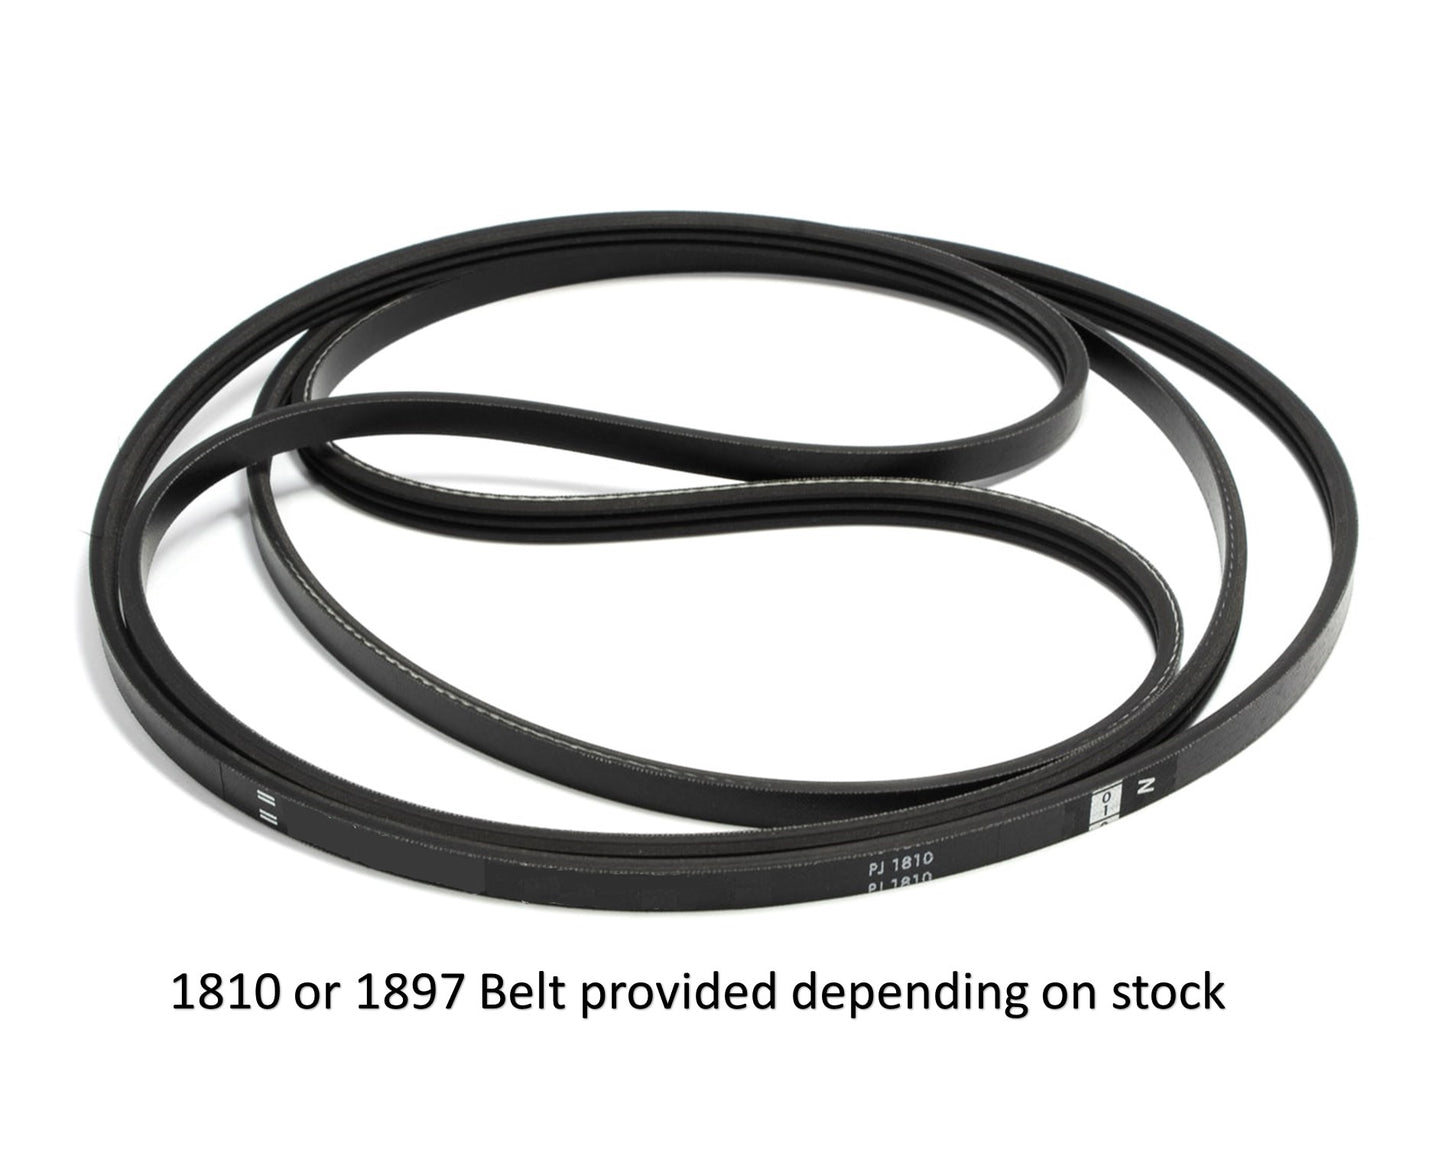 1897 EJ3 (1810) Tumble Dryer Belt for White Knight Crosslee CL447 BG417 - 421307850861, 481935818131, 421307850862